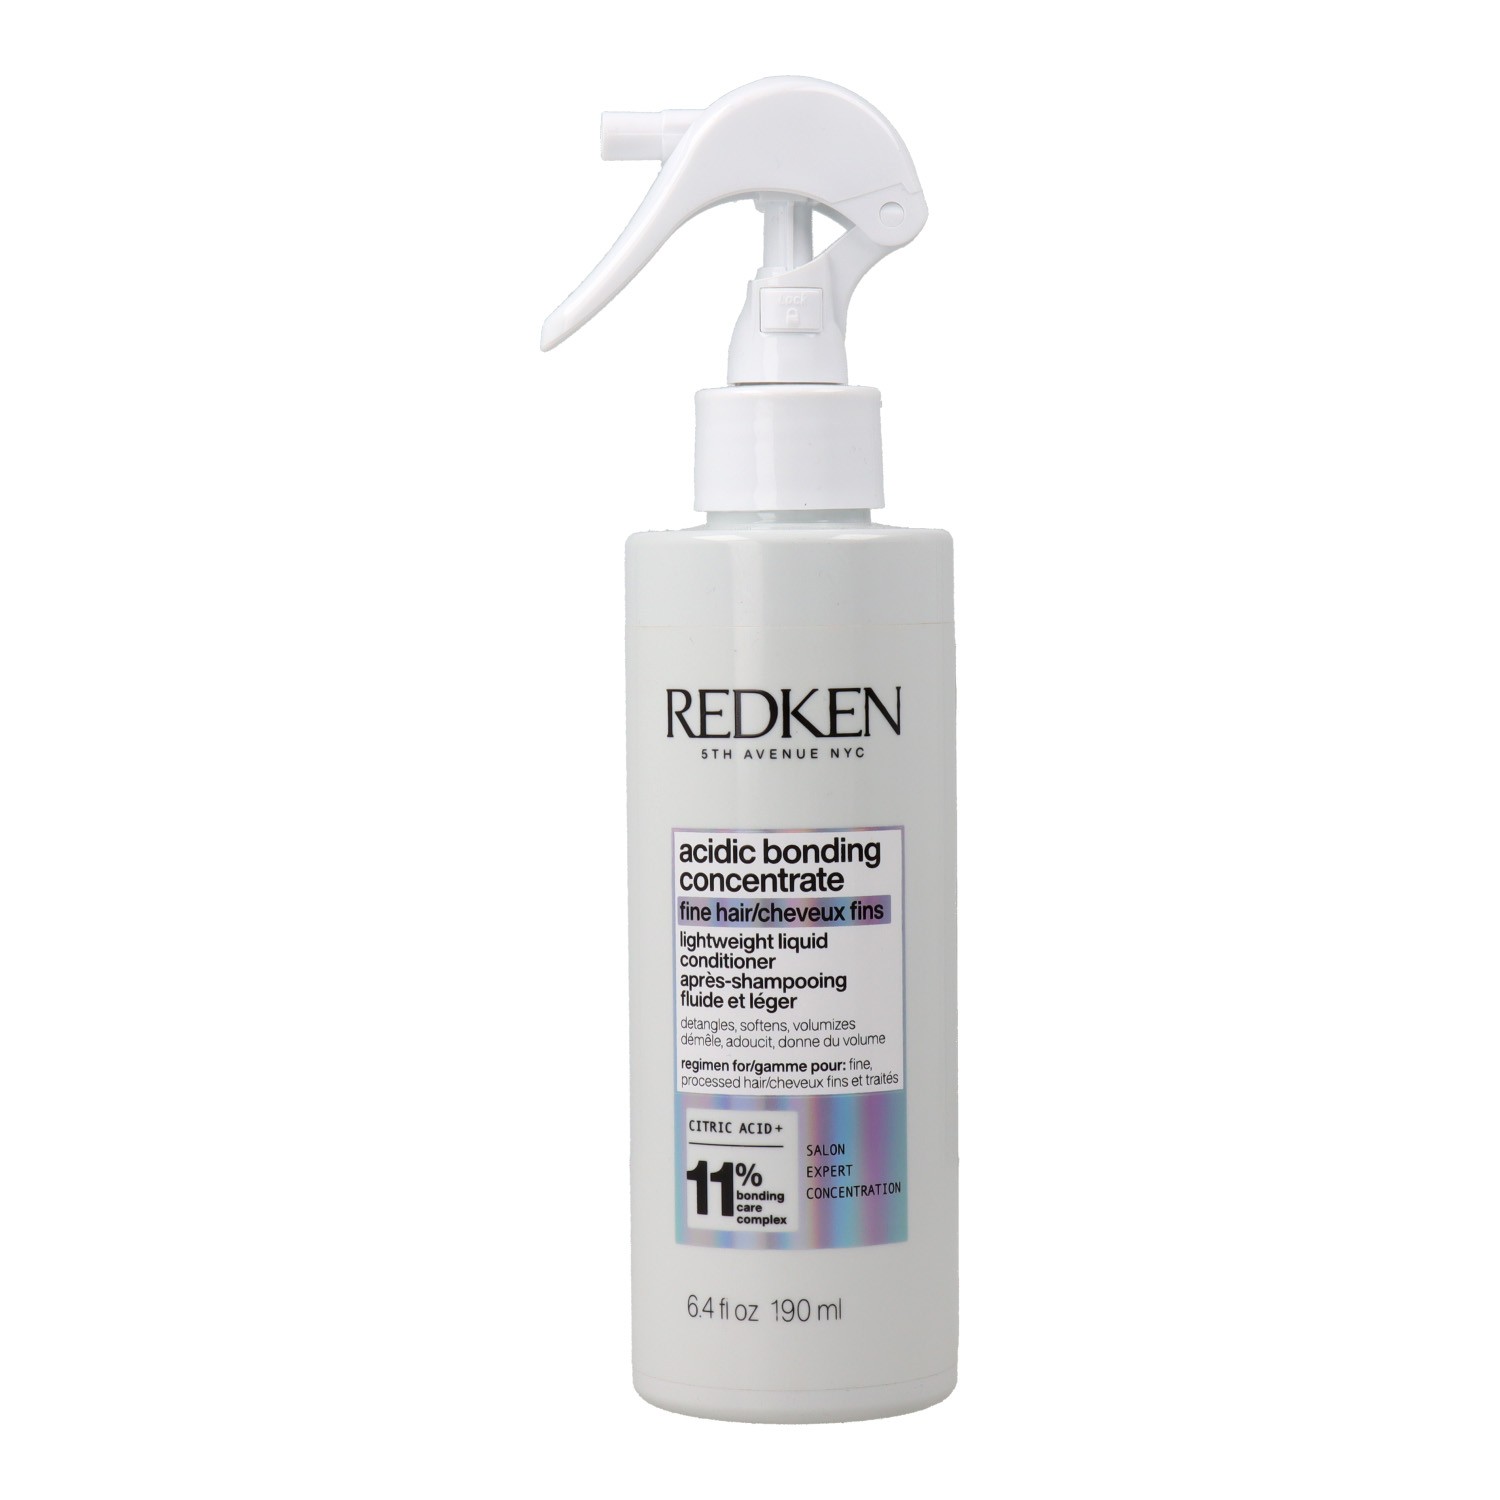 Redken Acidic Bonding Concentrate 11% Après-shampooing 190 ml